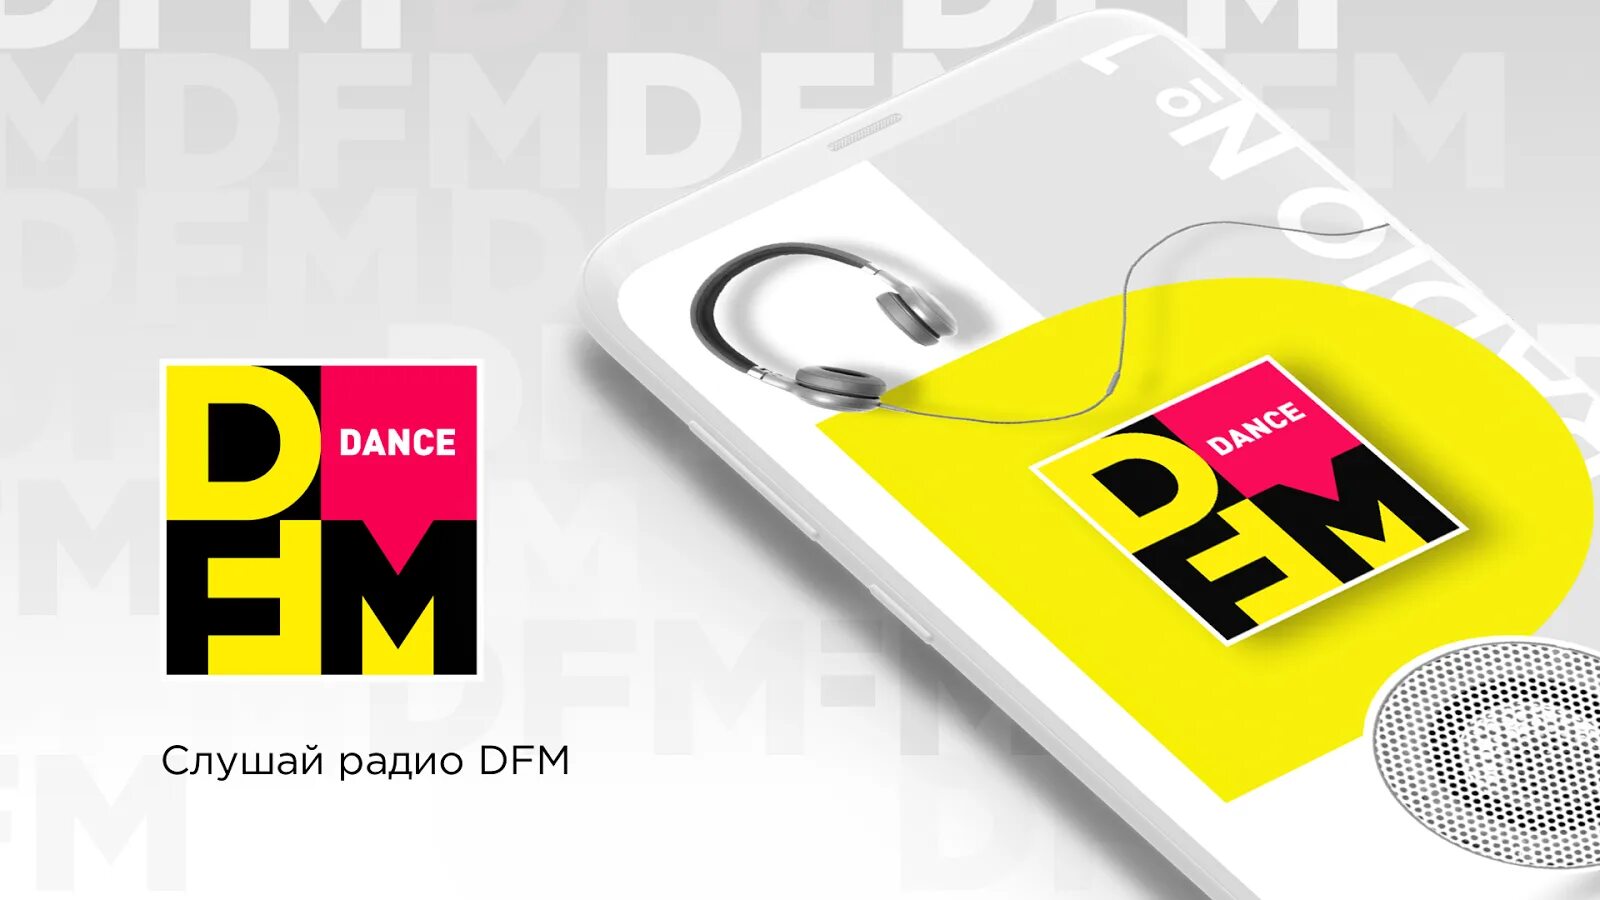 DFM логотип. Сайт радиостанции DFM. Логотип радиостанции DFM. Радио дфм картинках.